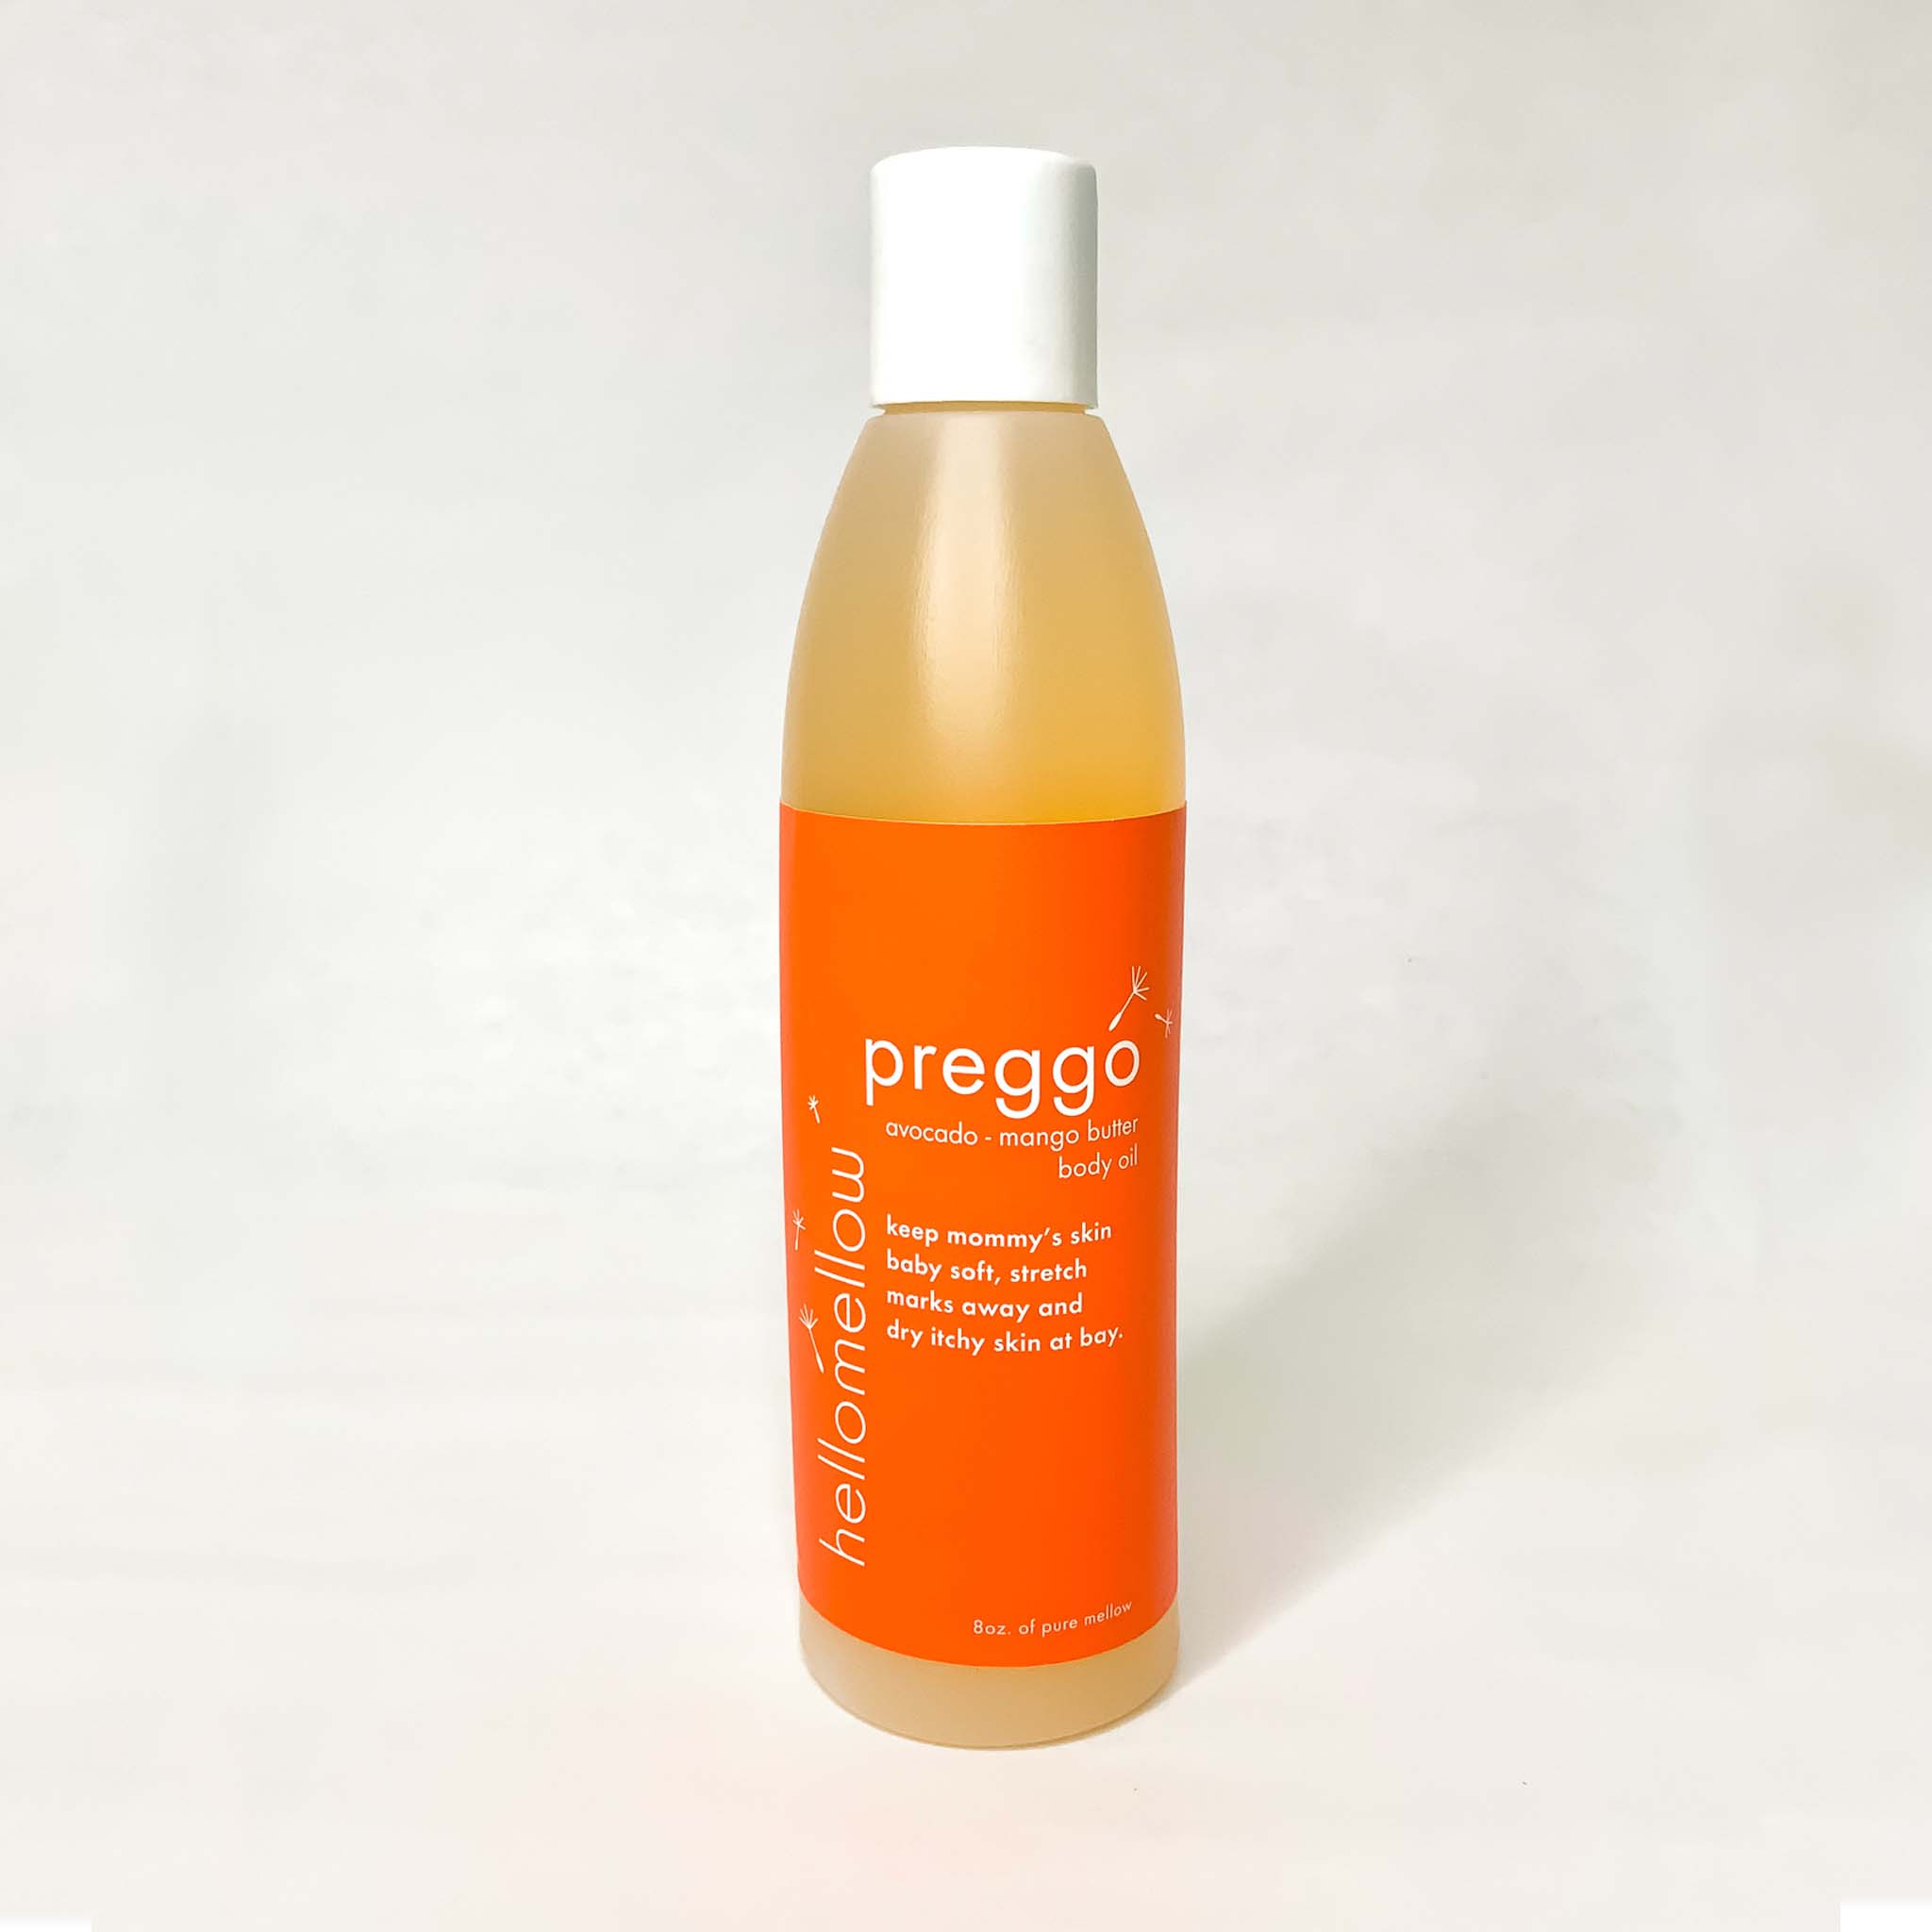 preggo - body oil